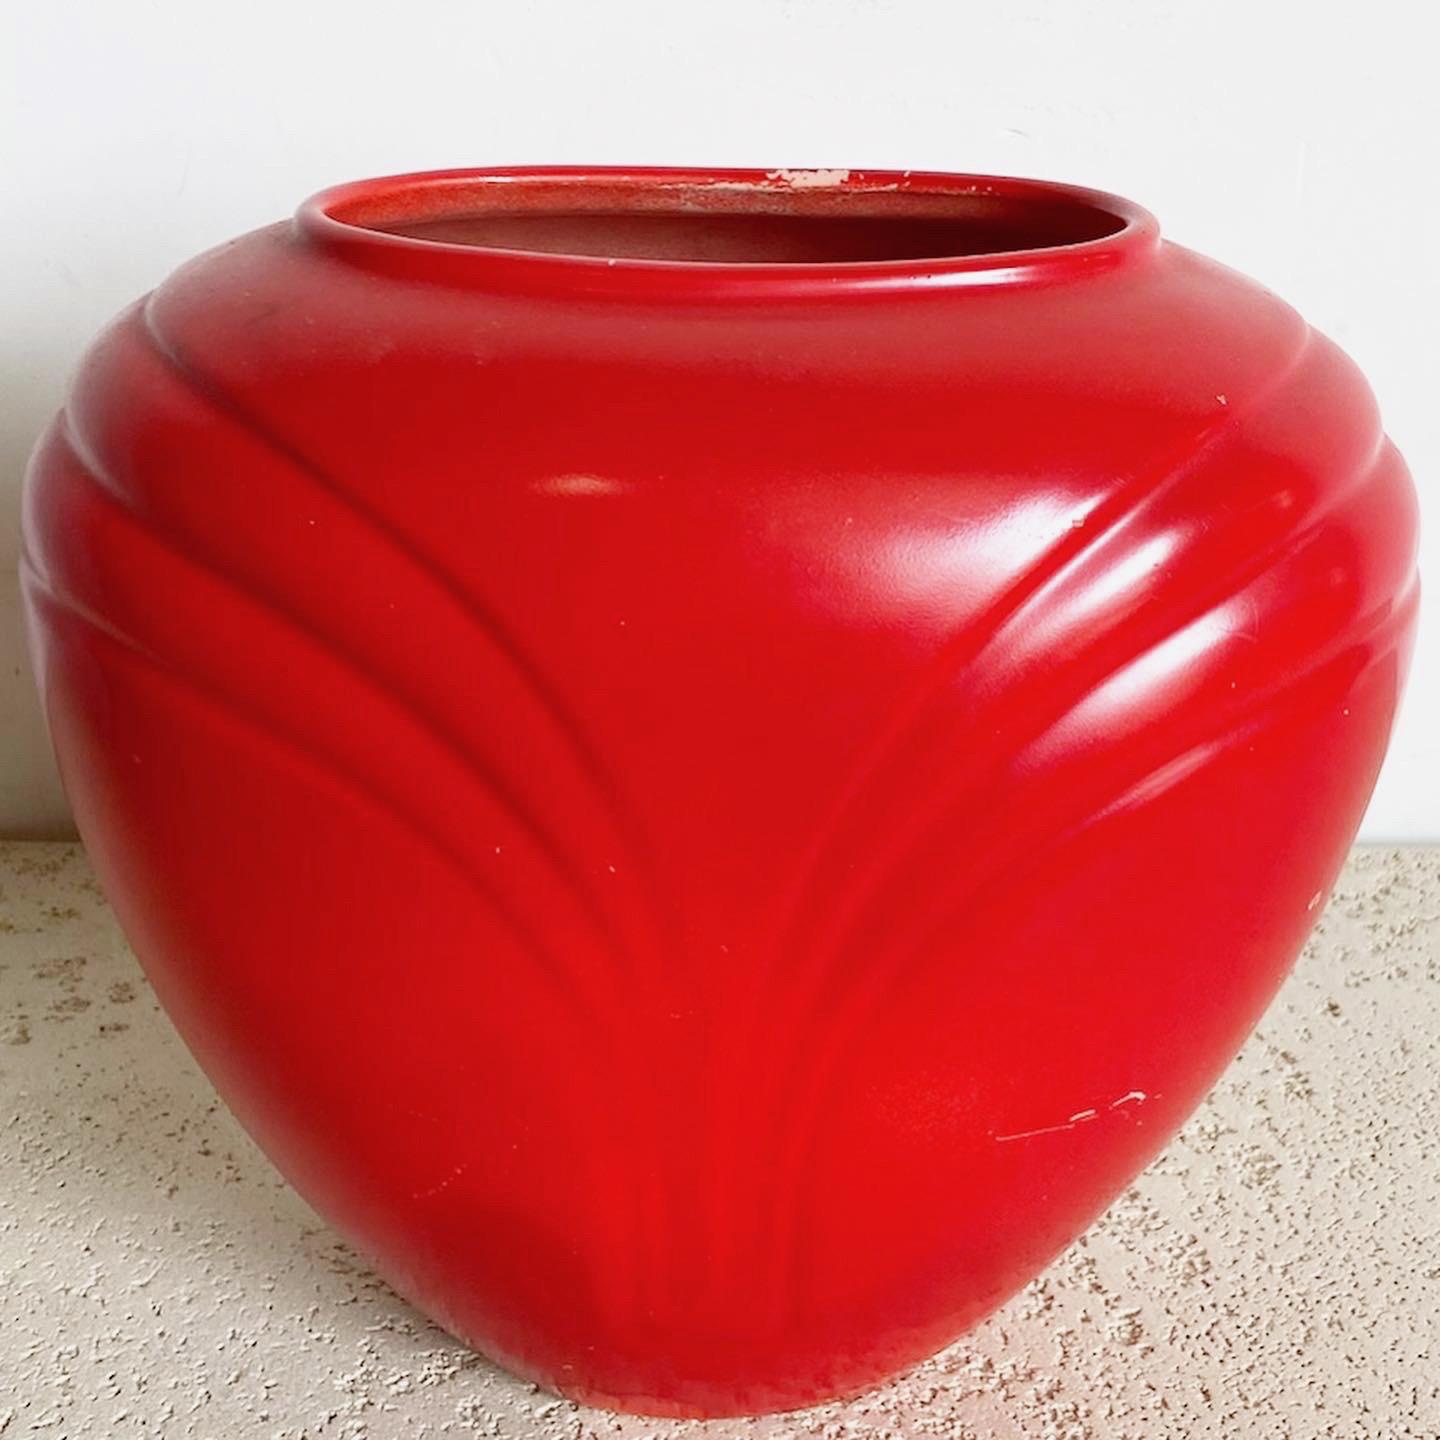 Le vase postmoderne Haeger Red est une pièce étonnante qui allie sans effort l'art et la fonction, capturant l'essence du design postmoderne avec sa teinte rouge vibrante et sa forme non conventionnelle.
A probablement été repeint en rouge.